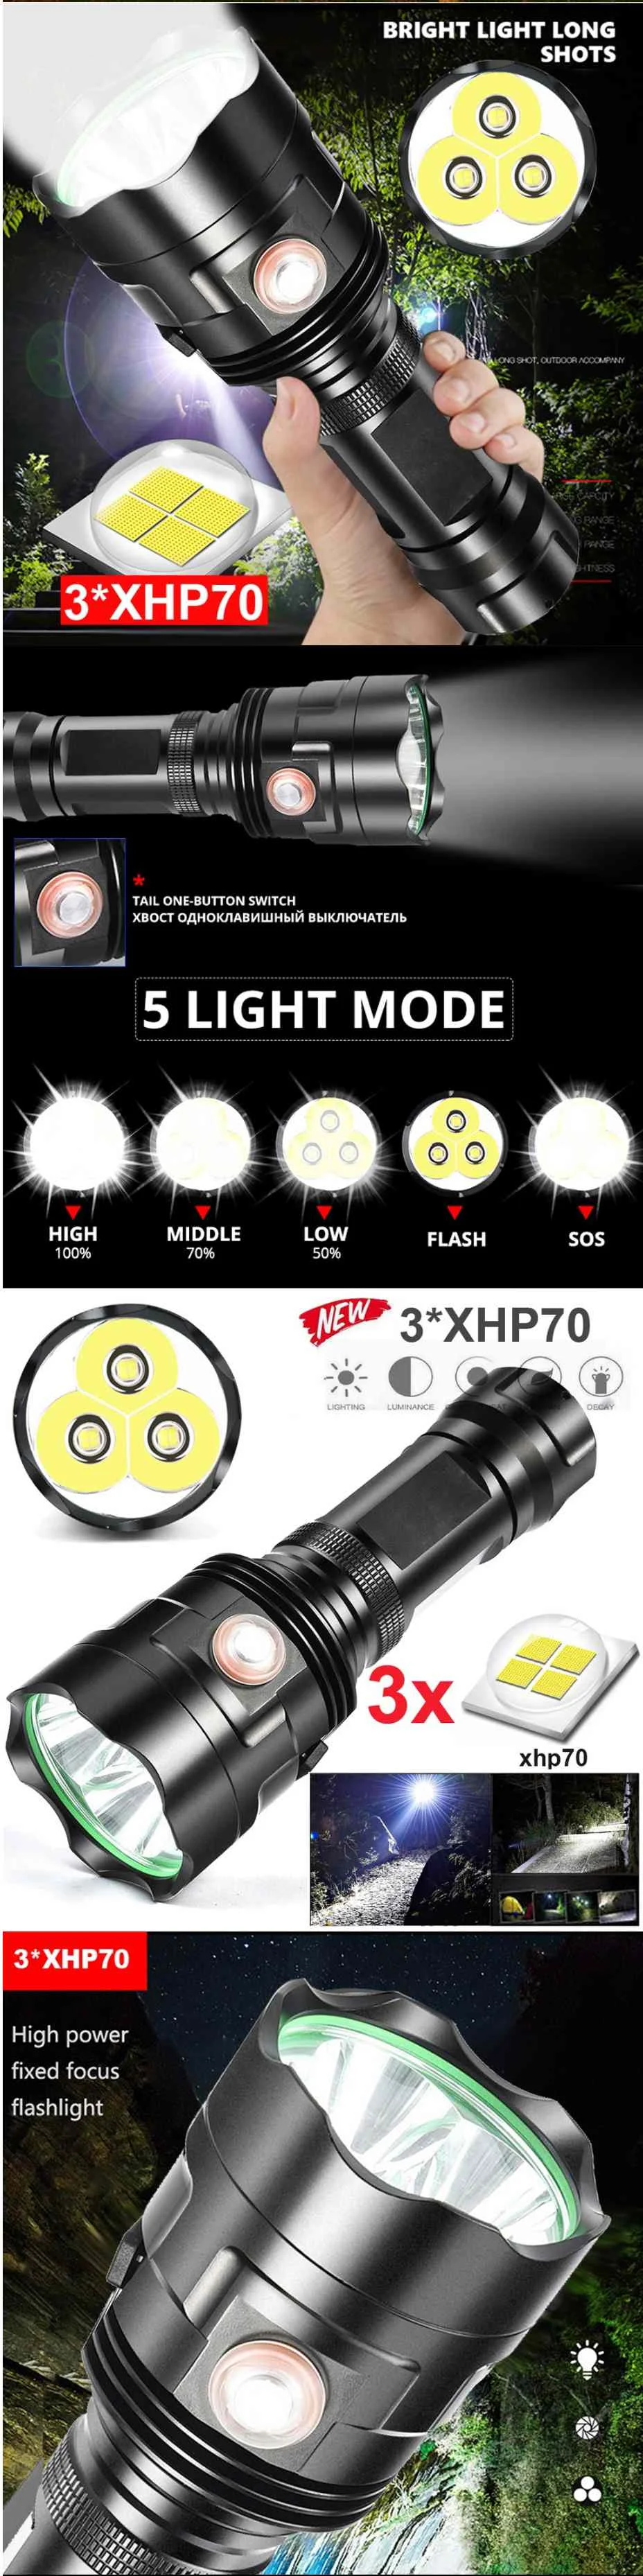 XANES P70 T3U XHP70 светодиодный фонарь с 5 режимами USB Перезаряжаемый Водонепроницаемый светодиодный фонарь 18650 26650 фонарь прожектор походный фонарь